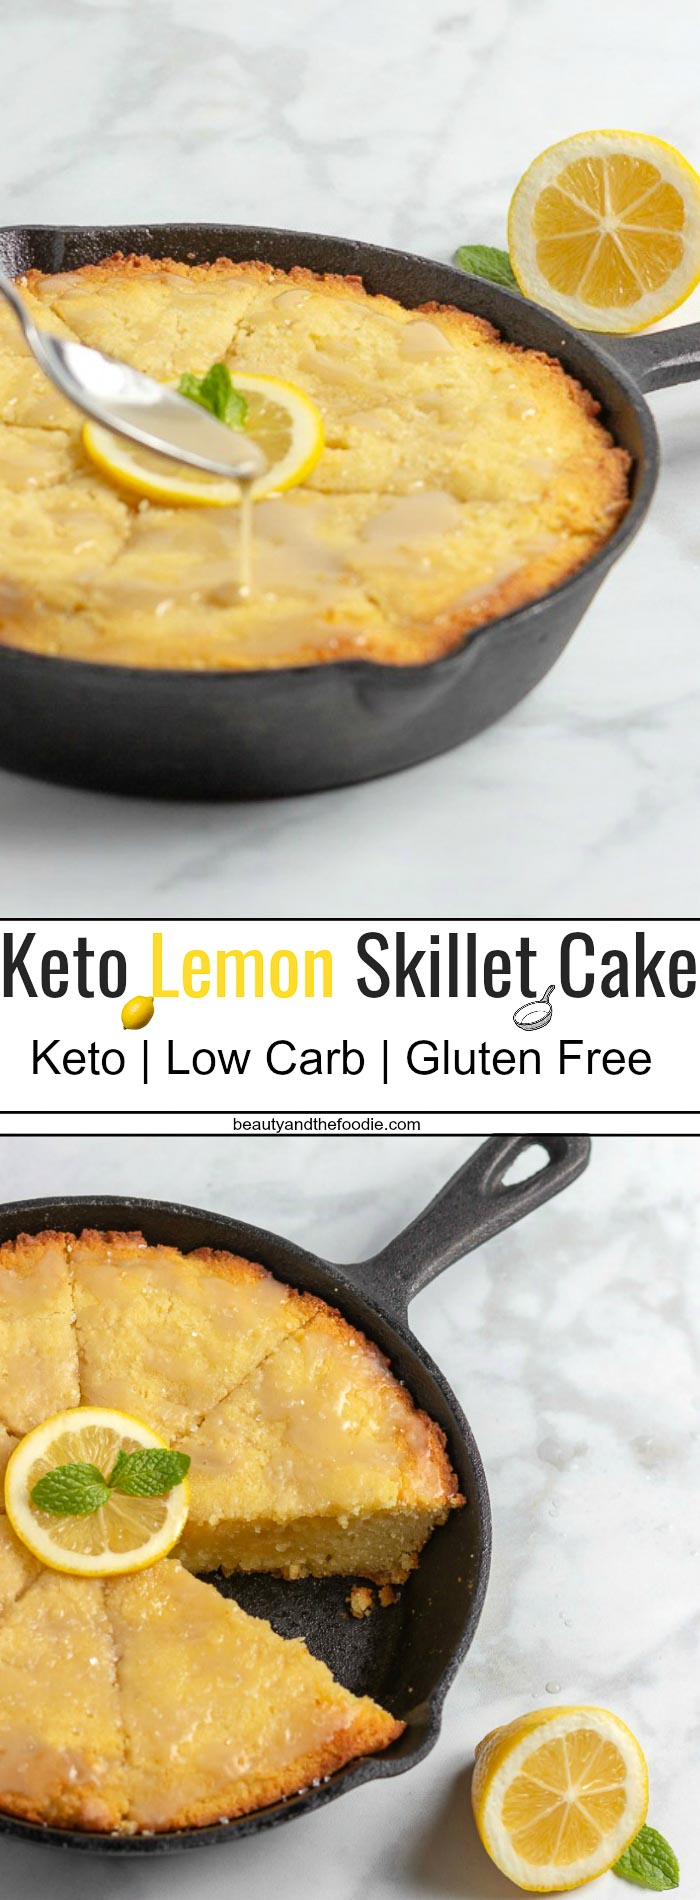 Keto Lemon Skillet Cake- Low Carb & Gluten Free